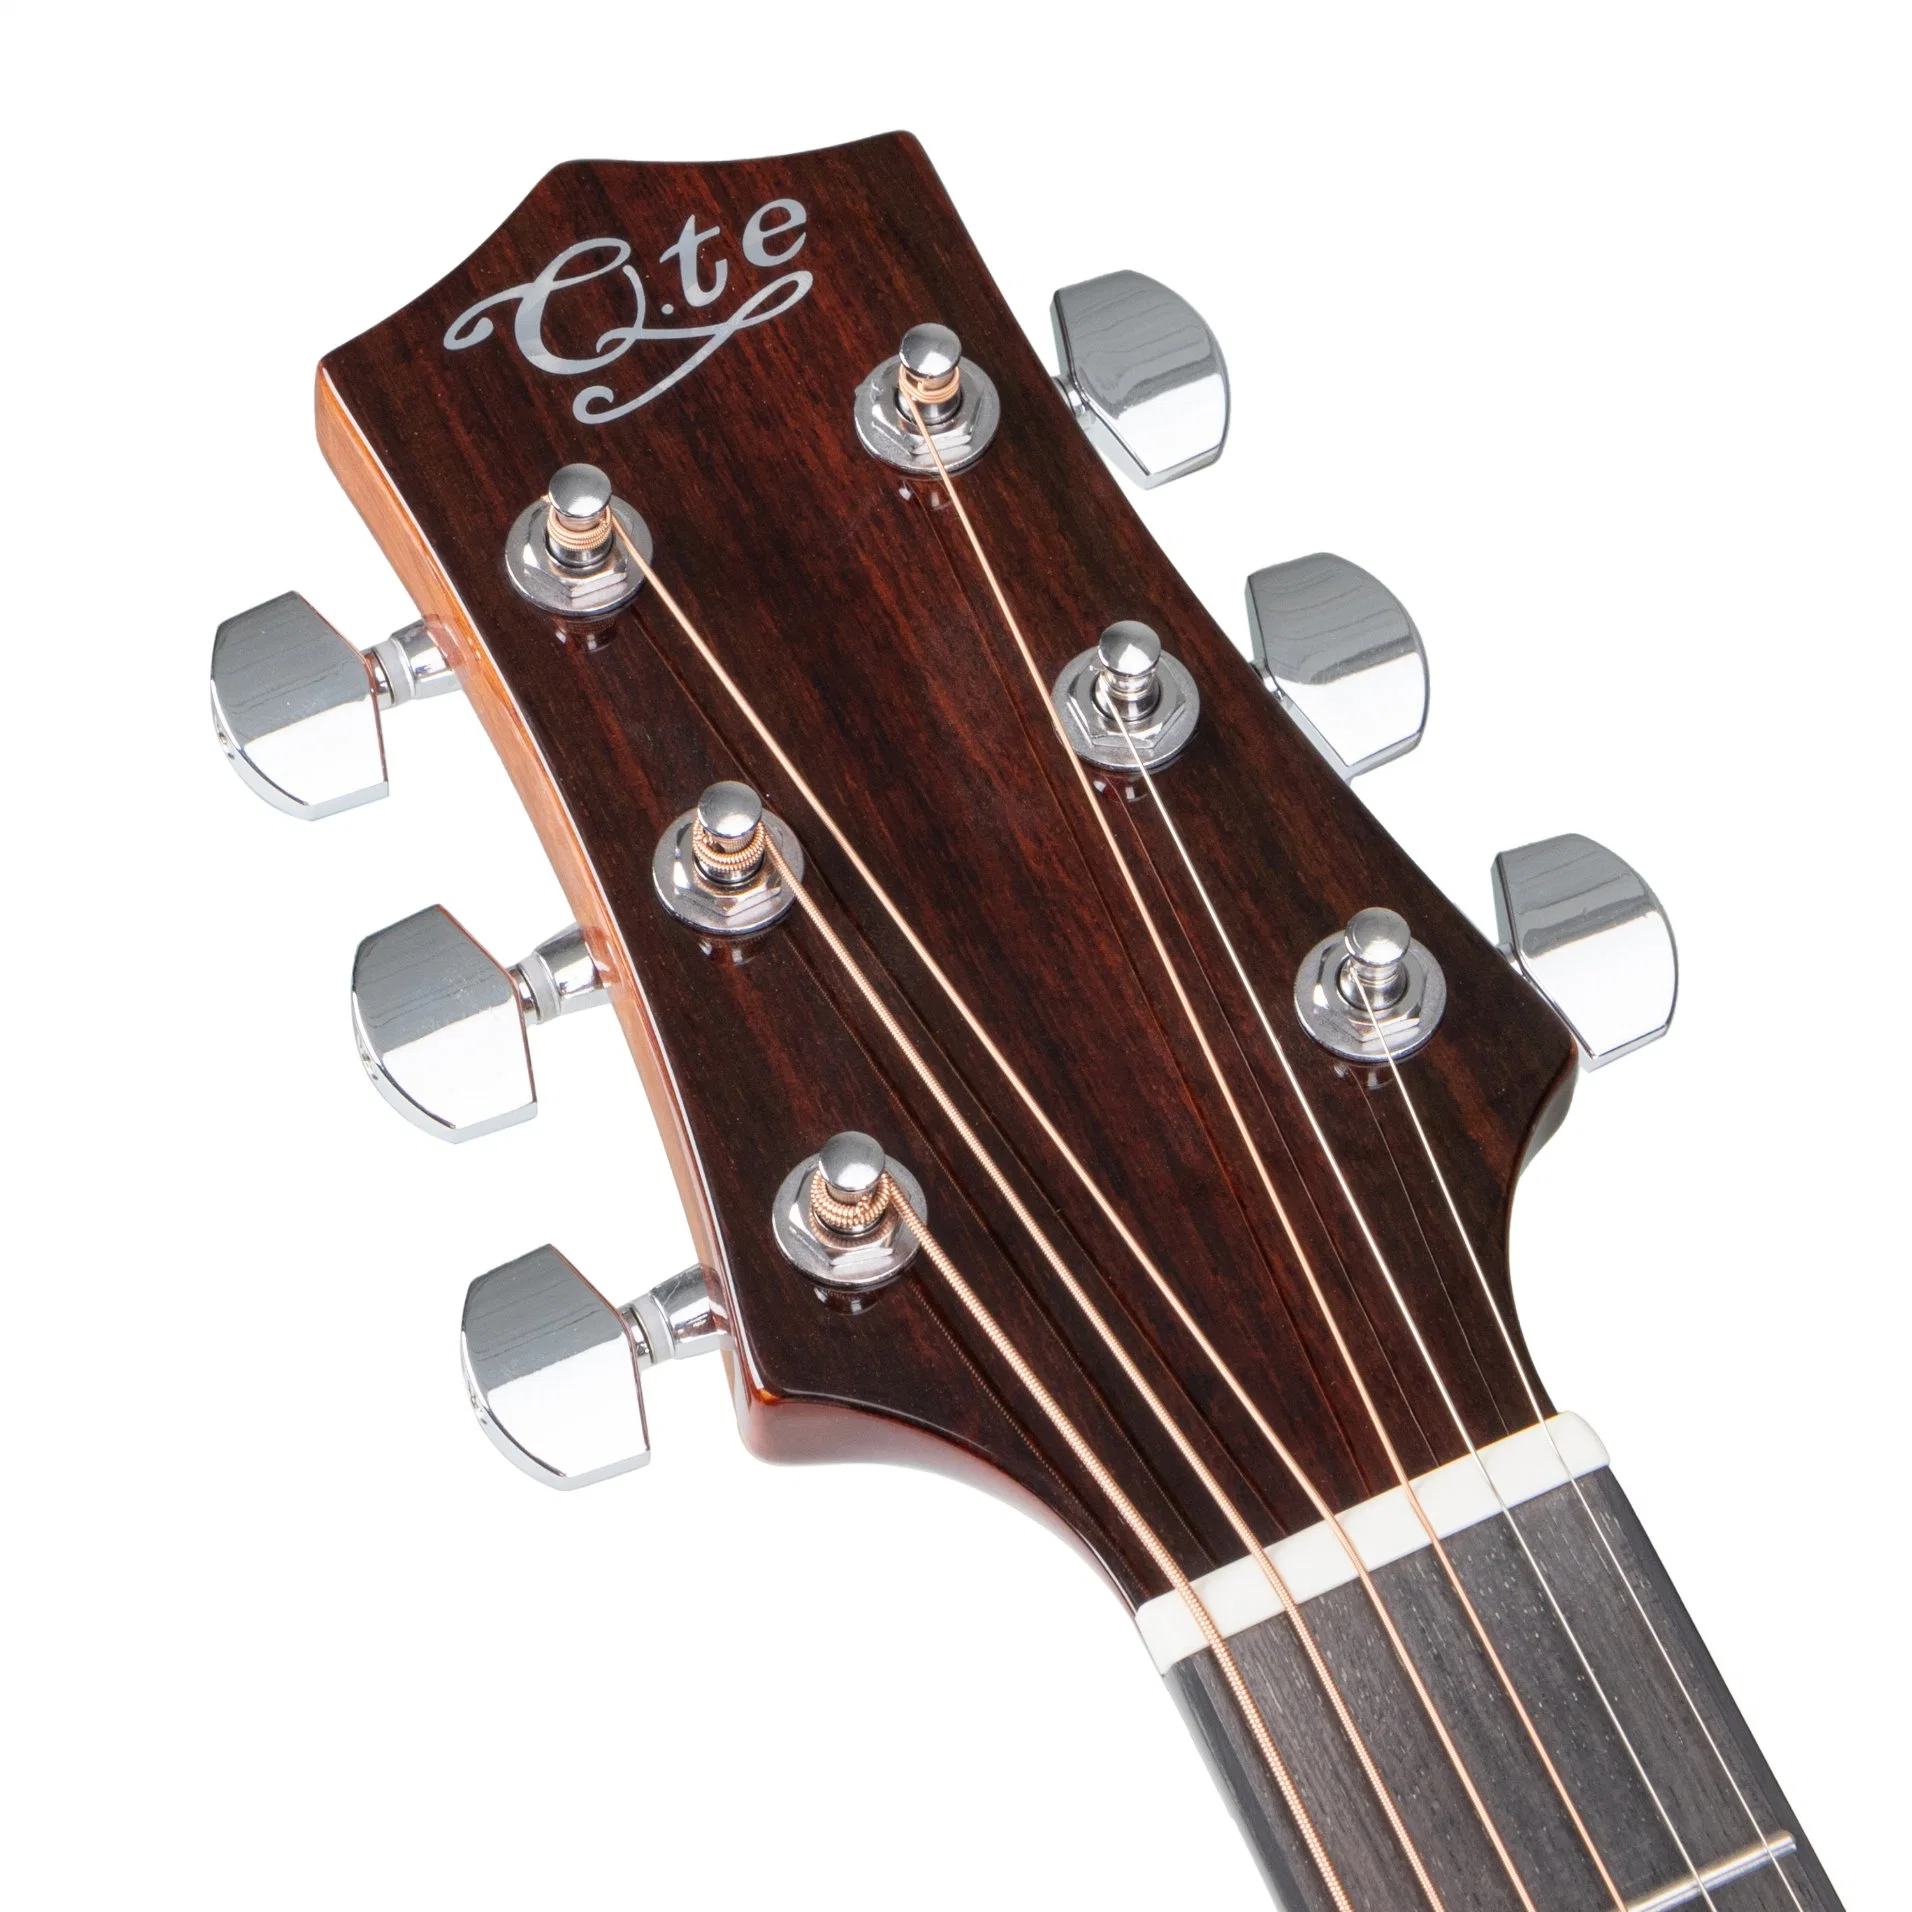 Made in China schöner Preis solide 41 Zoll Folk-Gitarre Akustische Gitarre